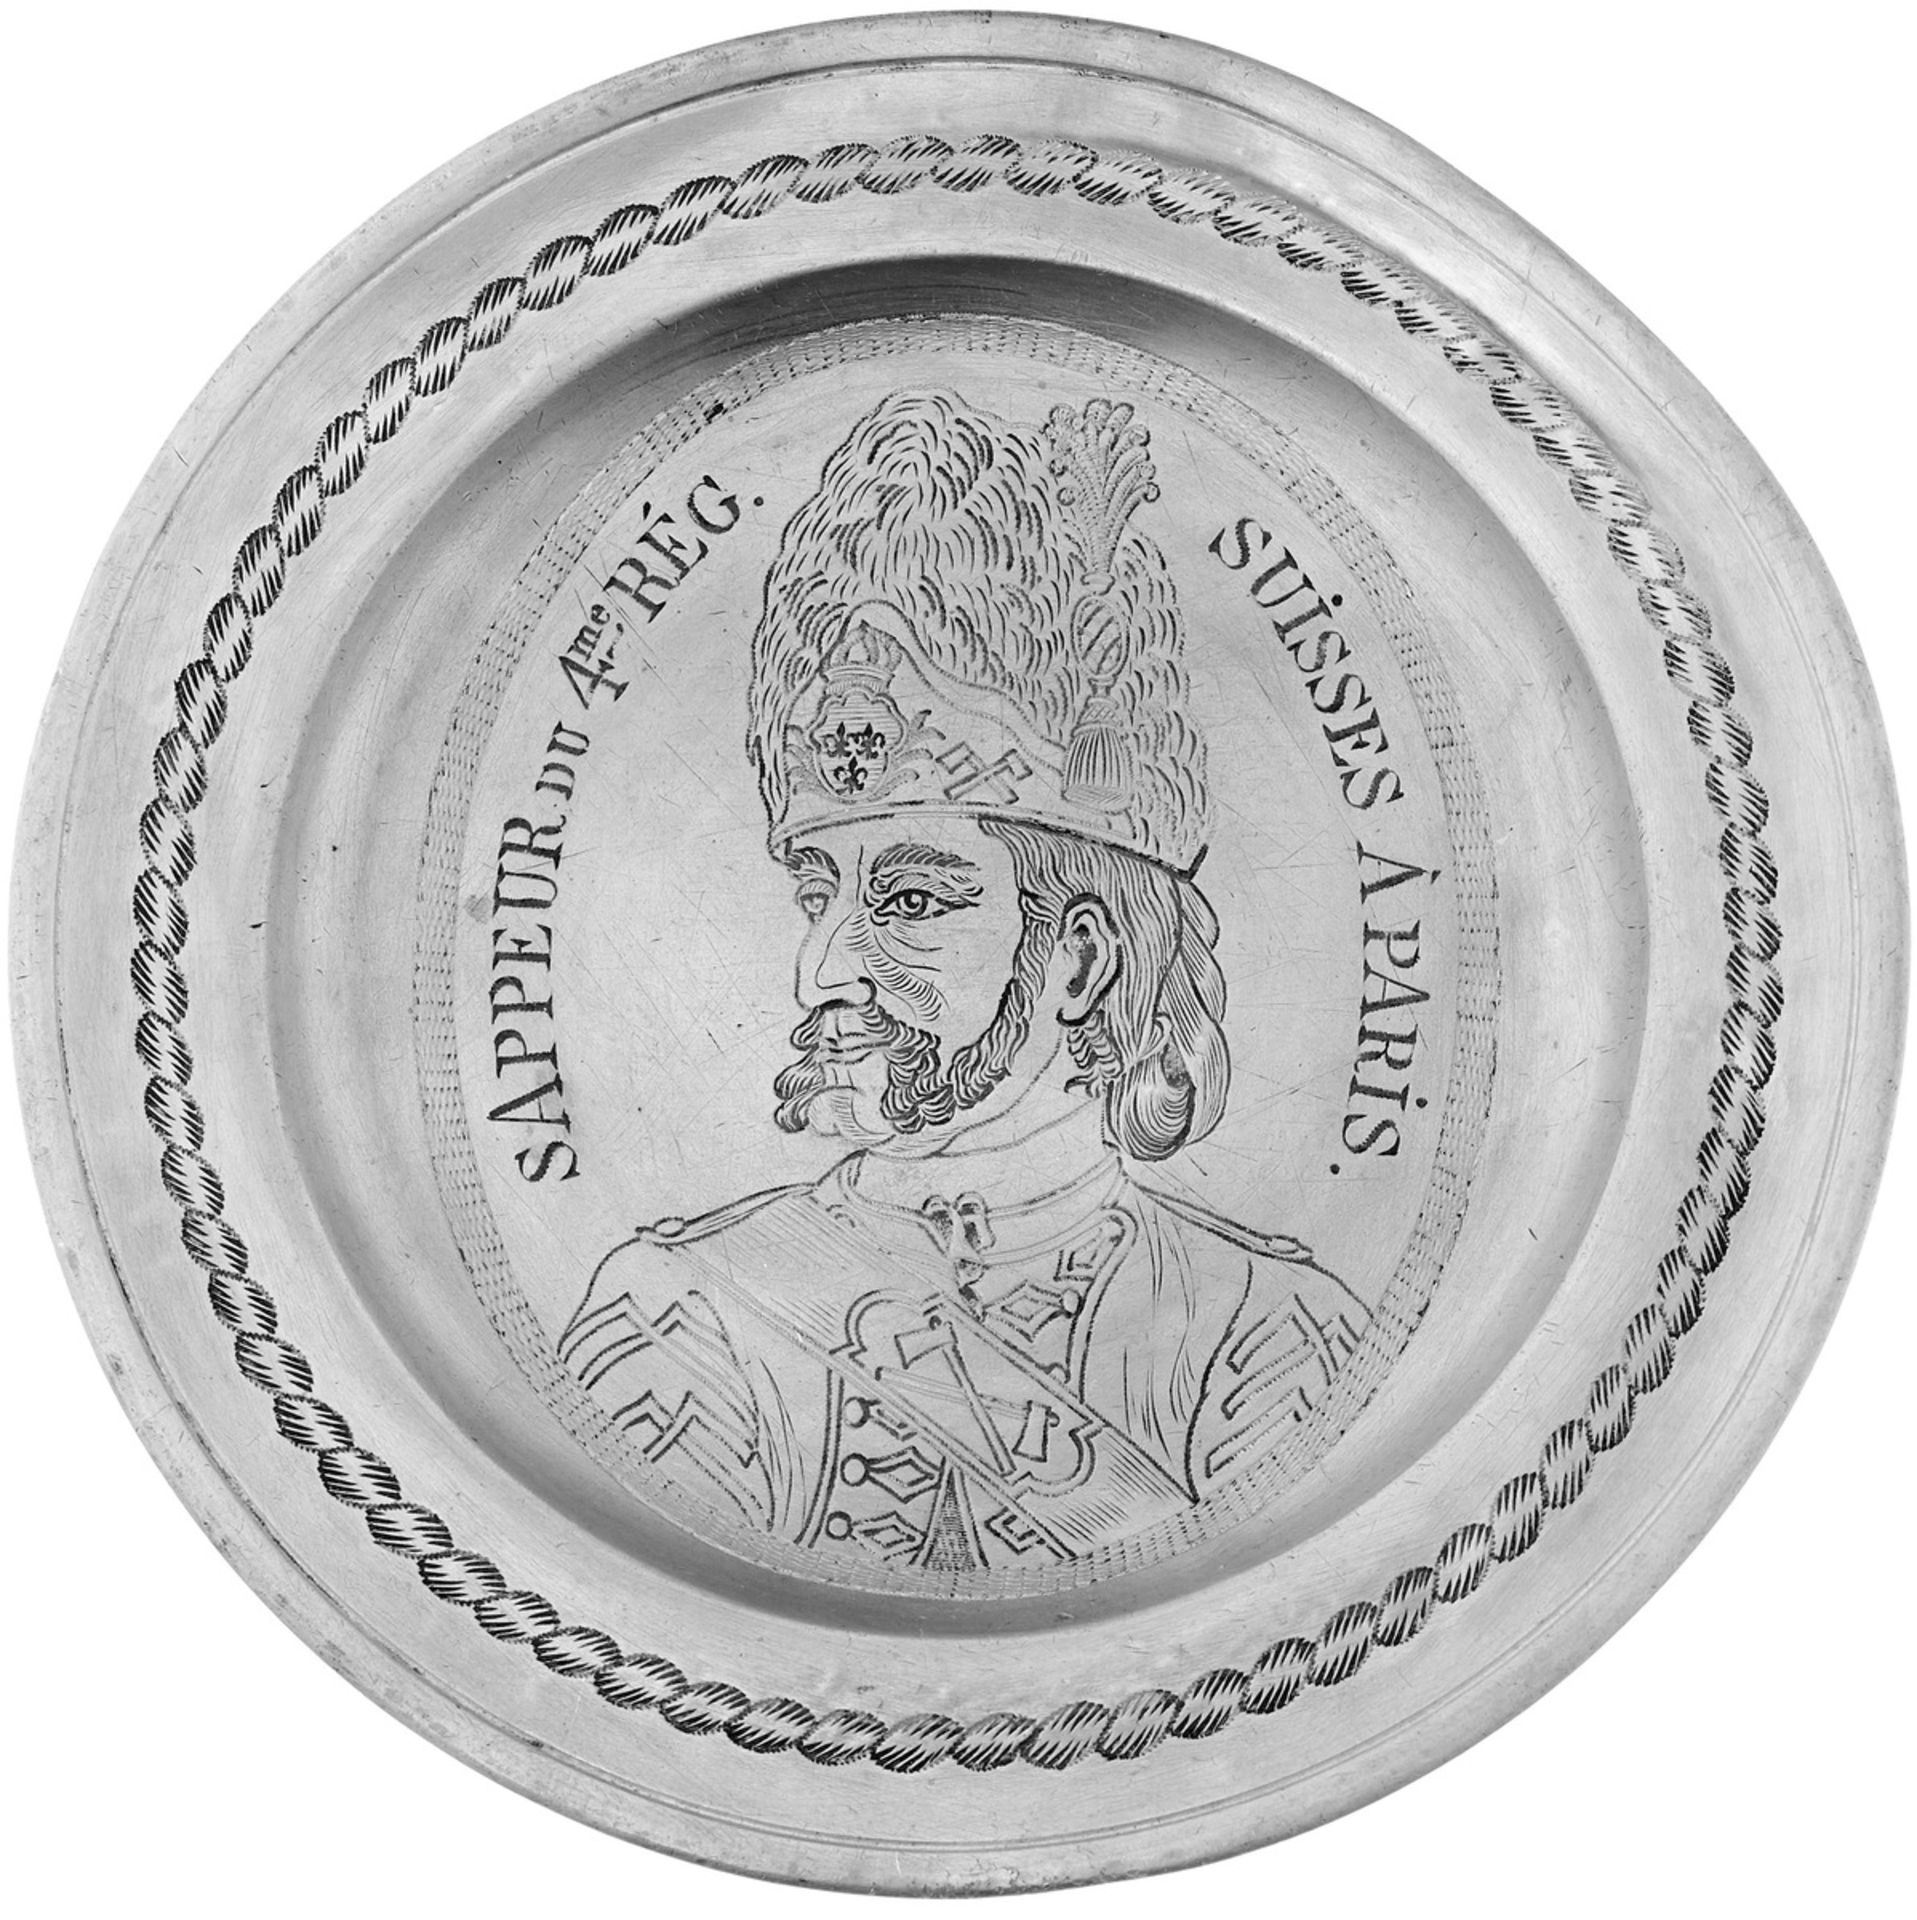 Zierteller "Sappeur"19. Jh. Zinn. Im Spiegel gravierte Portraitbüste mit Inschrift "Sappeur du